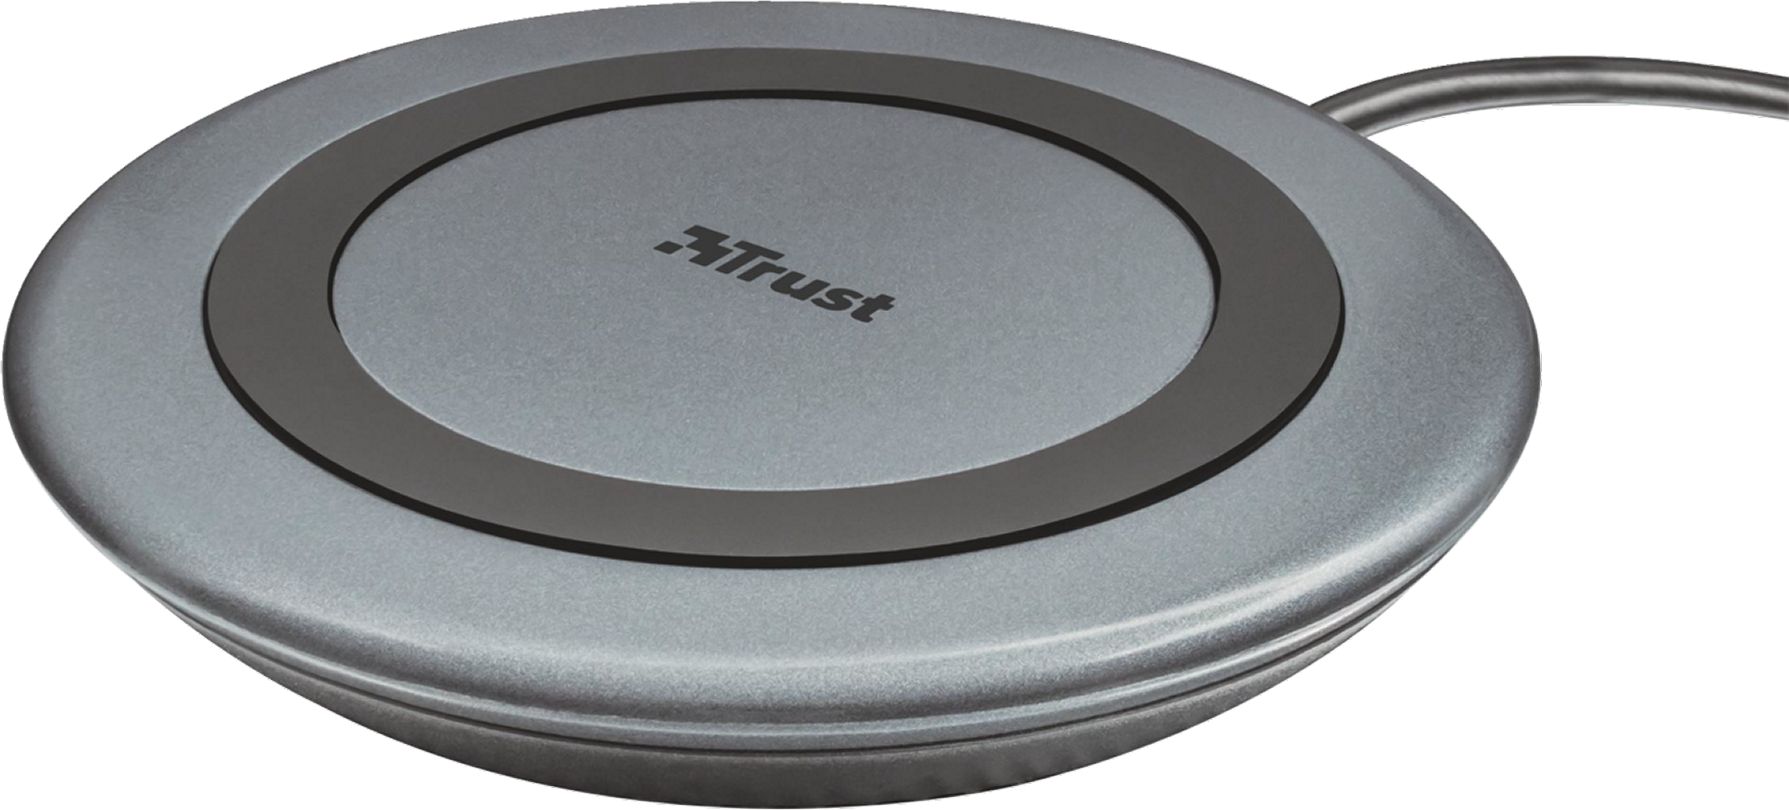 Izpārdošana - Trust Yudo10 Fast Wireless charger Grey 8713439223620 (ir veikalā) iekārtas lādētājs